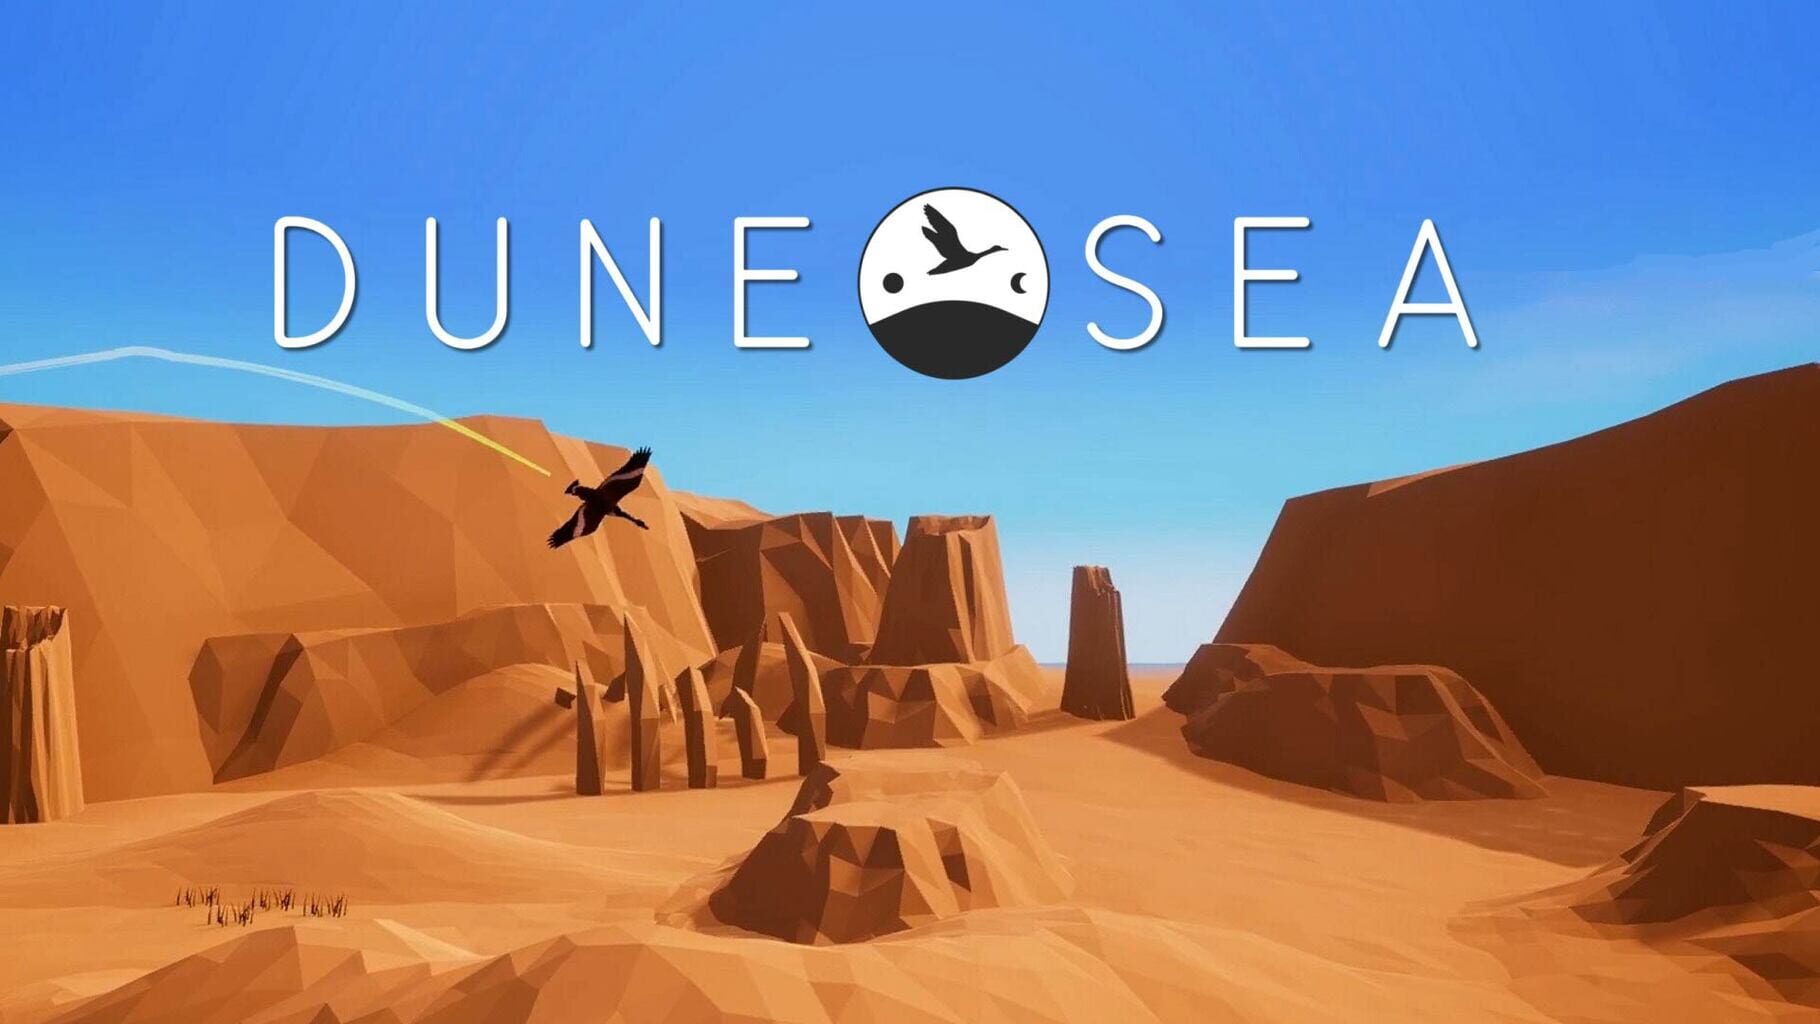 Dune Sea artwork